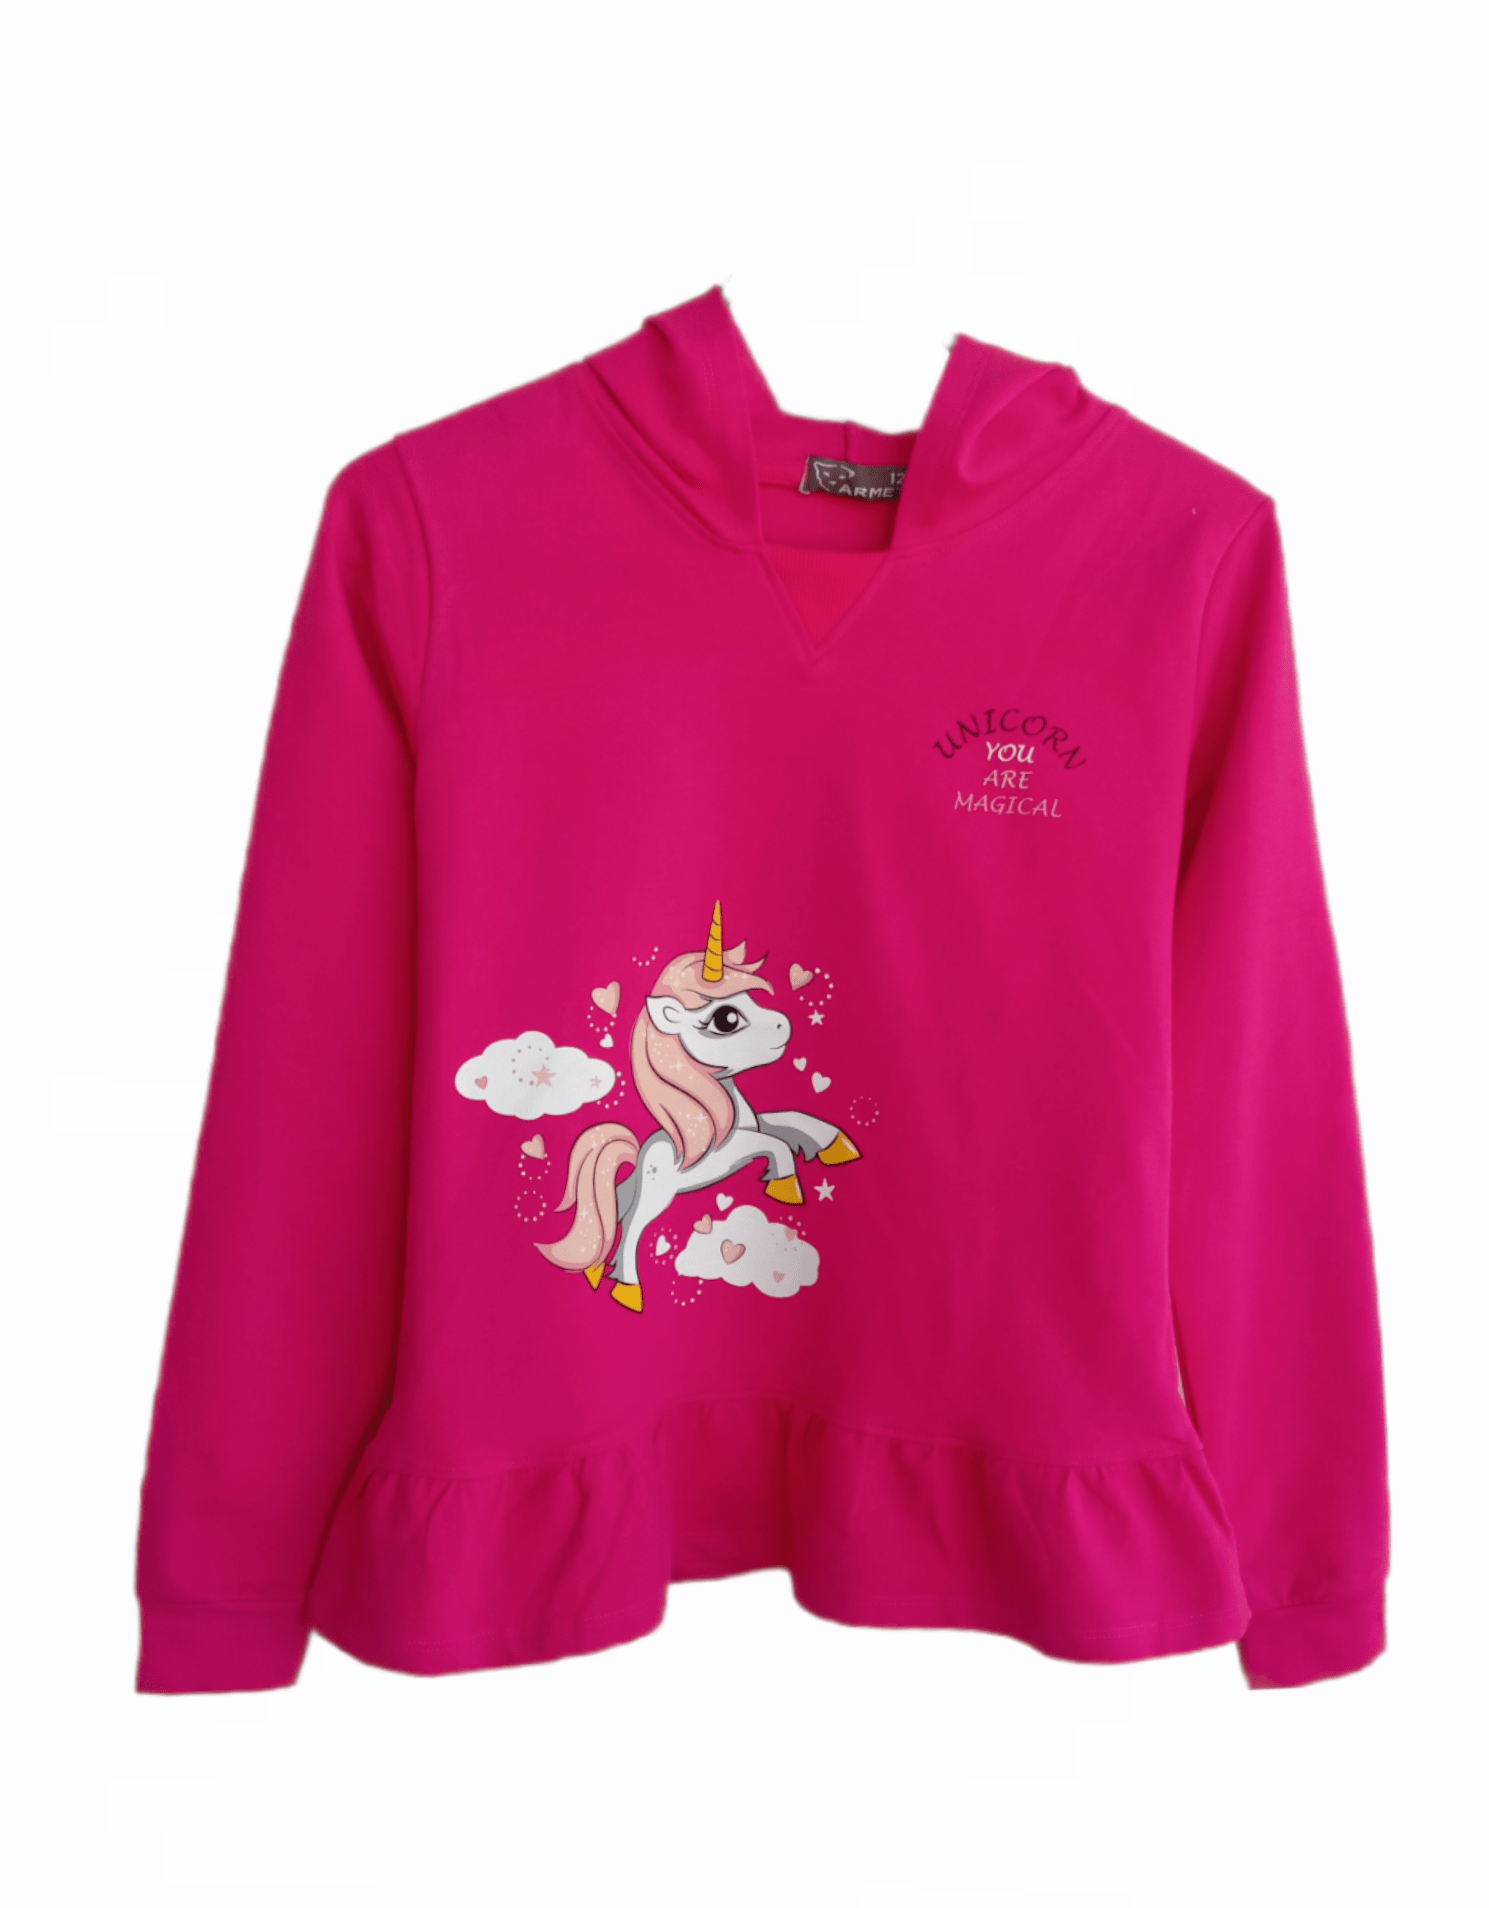 ElOutlet Kids Sweatshirts size 12 (9-10 years) Girls Sweatshirt - Unicorn - fuchsia